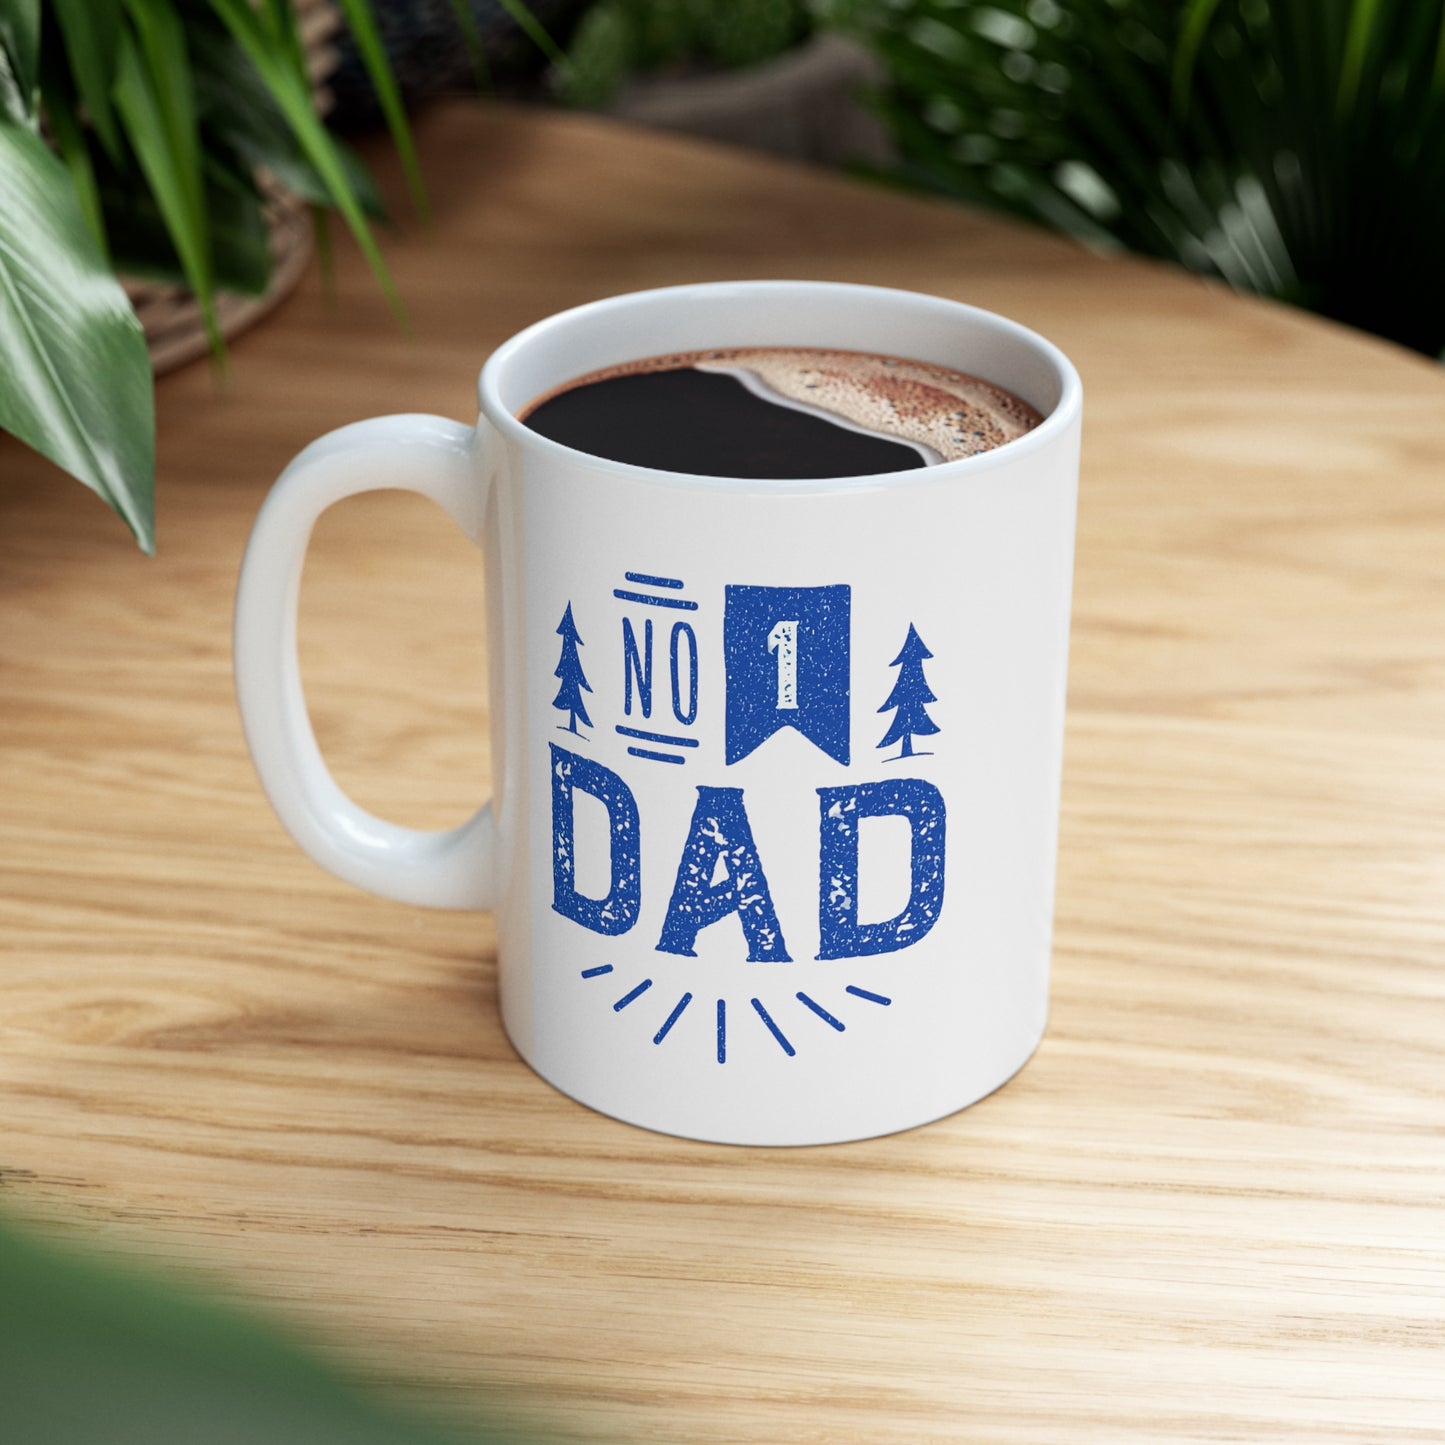 For Him - #1 Dad | Ceramic Mug 11oz